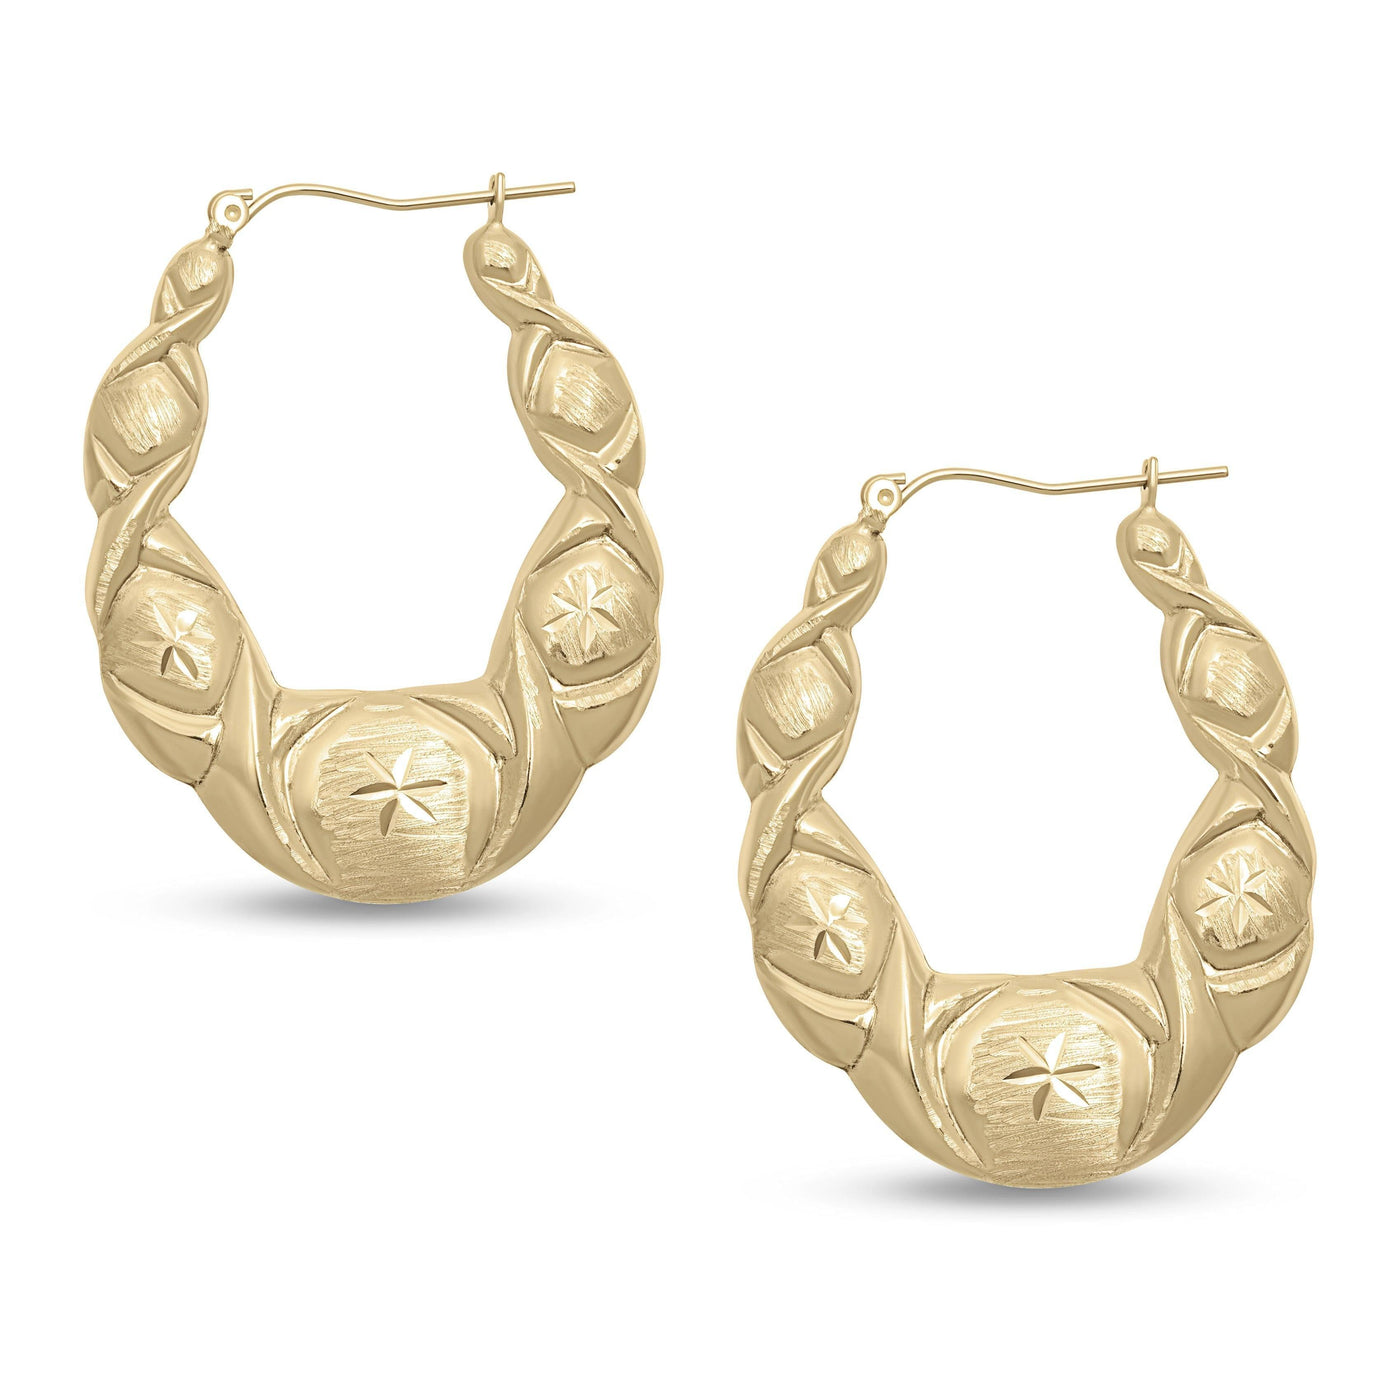 1 3/4" Medium Diamond Cut Graduated Hoop Earrings 10K Yellow Gold - bayamjewelry